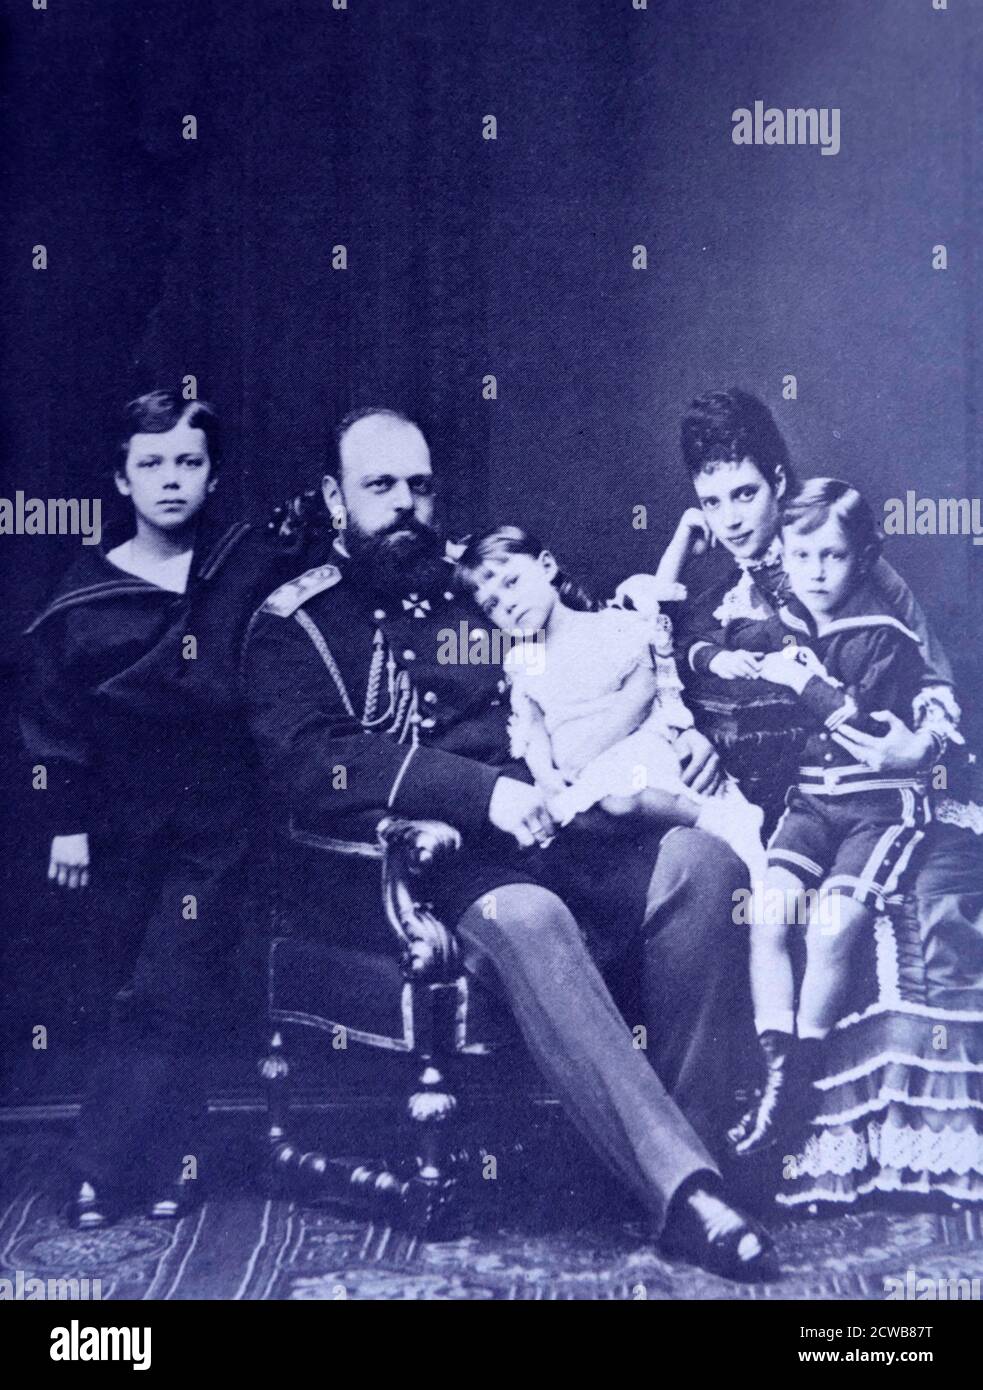 Le futur Tsar Alexandre III et l'impératrice Marie de Russie avec leurs trois enfants. Nicholas (plus tard Tsar), Xenia et George sont les trois enfants présentés. Vers 1878 Banque D'Images